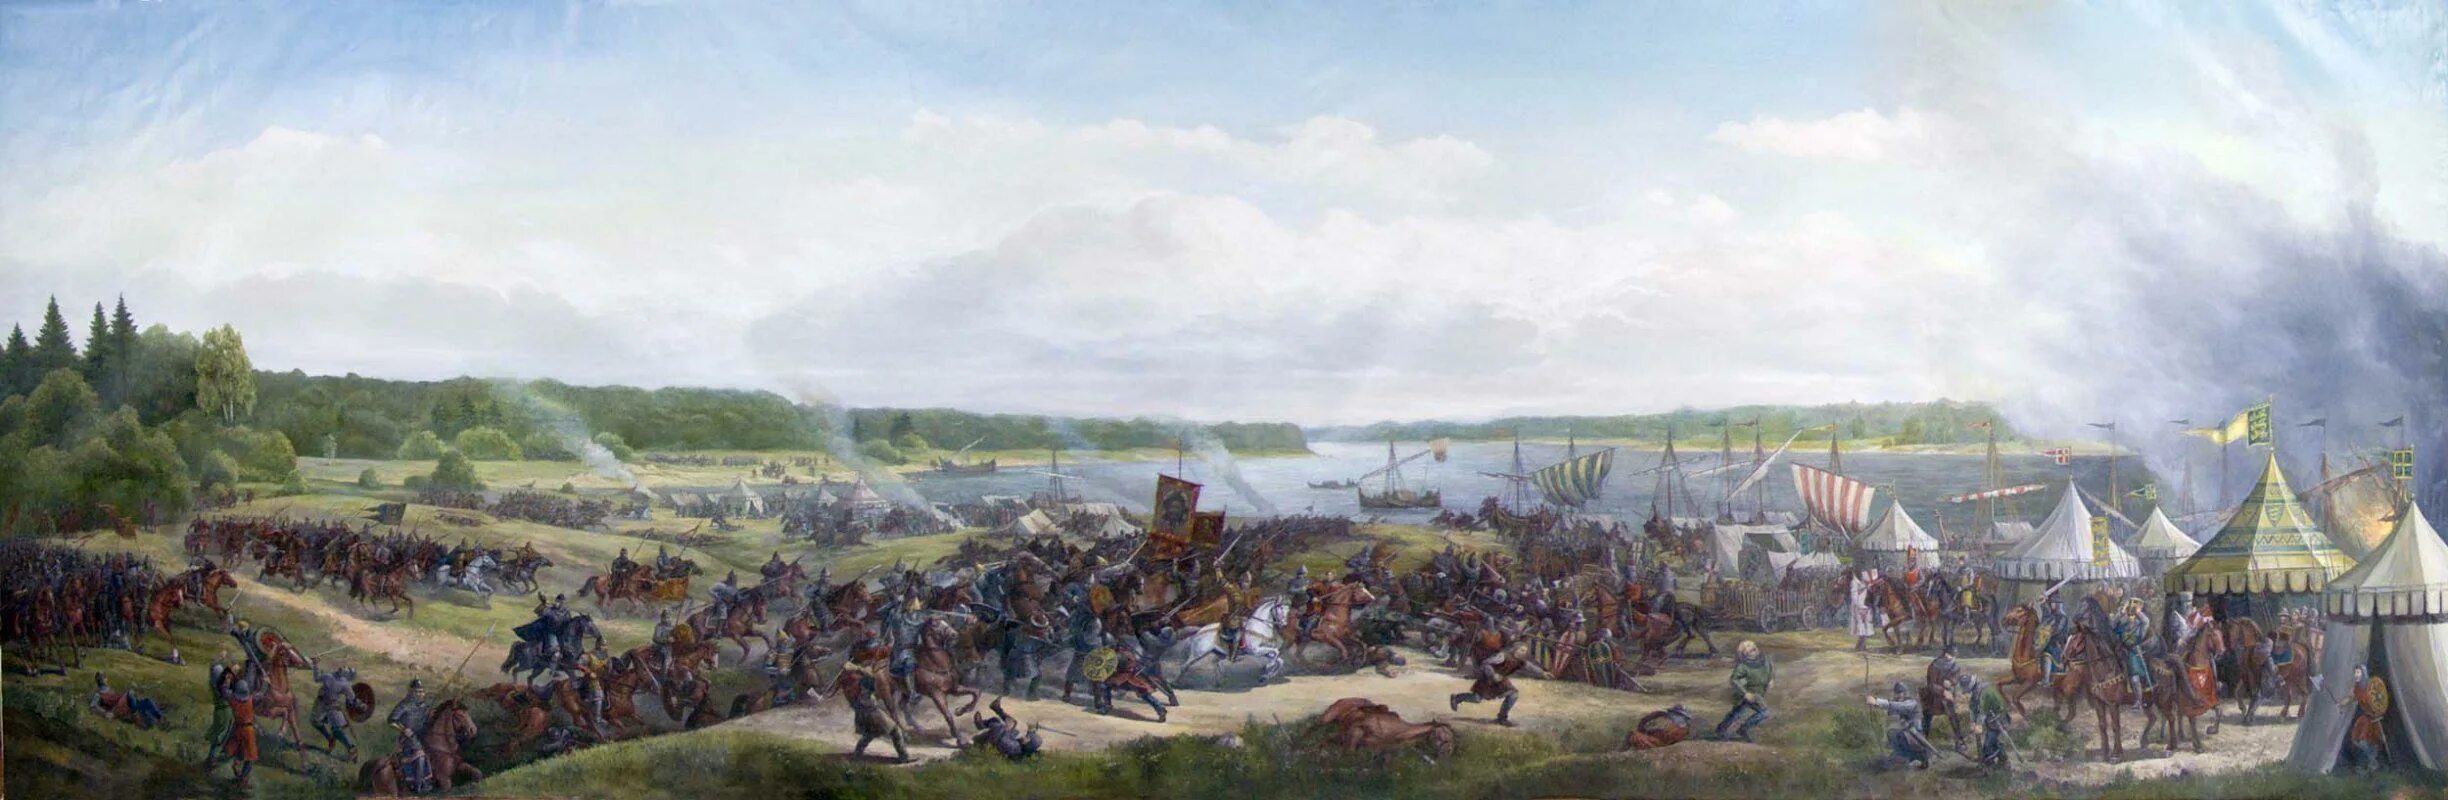 Шведские захватчики невская битва. Невская битва 1240. Битва на Неве 1240.